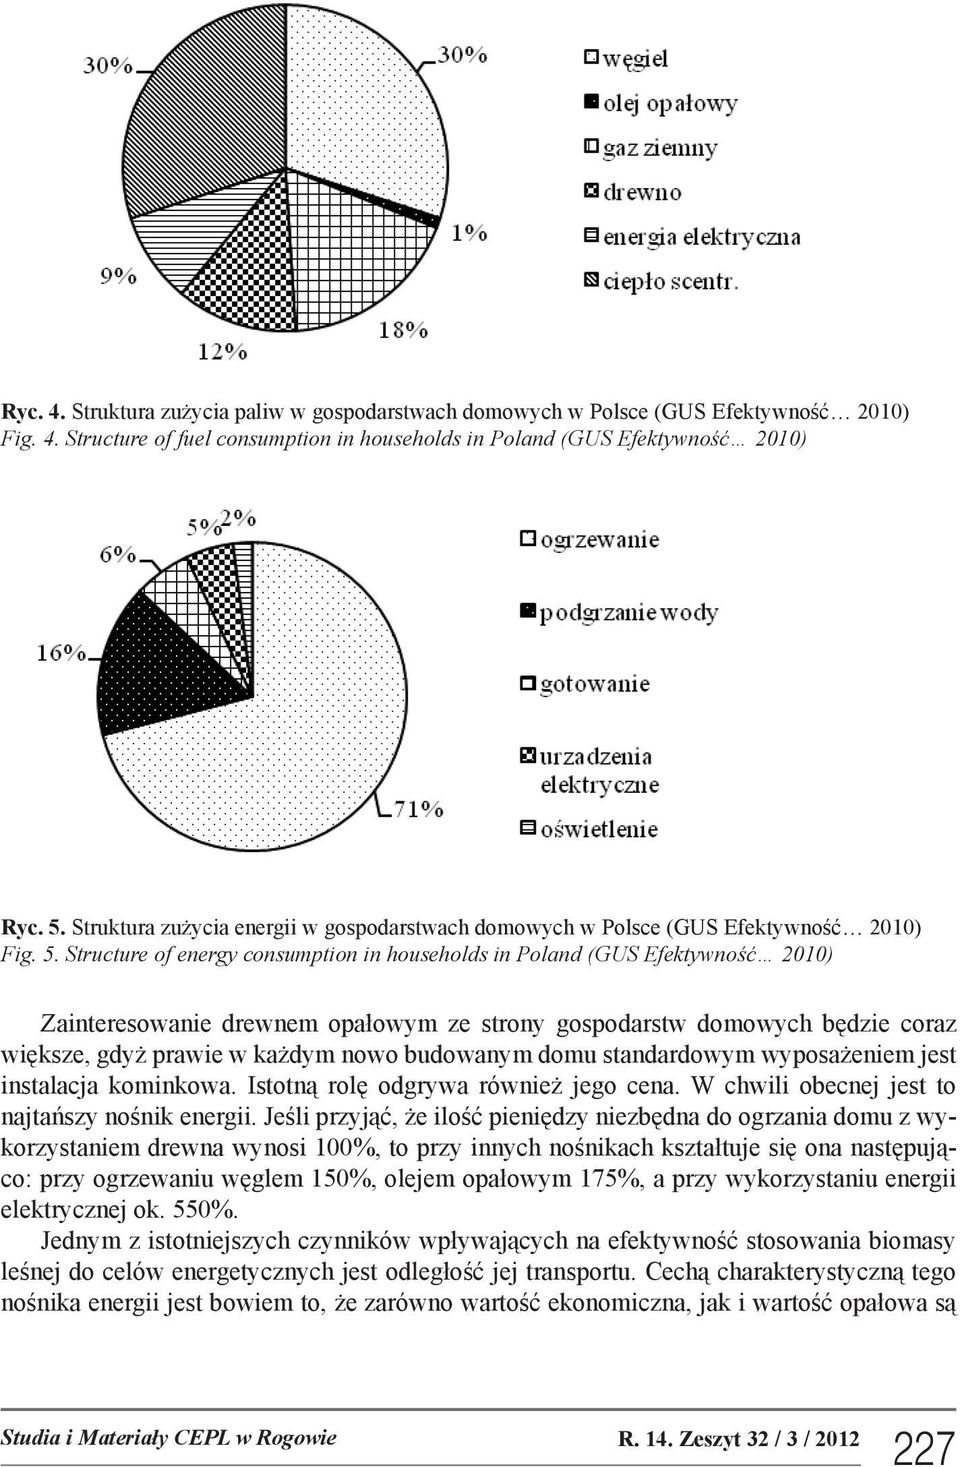 Structure of energy consumption in households in Poland (GUS Efektywność 2010) Zainteresowanie drewnem opałowym ze strony gospodarstw domowych będzie coraz większe, gdyż prawie w każdym nowo